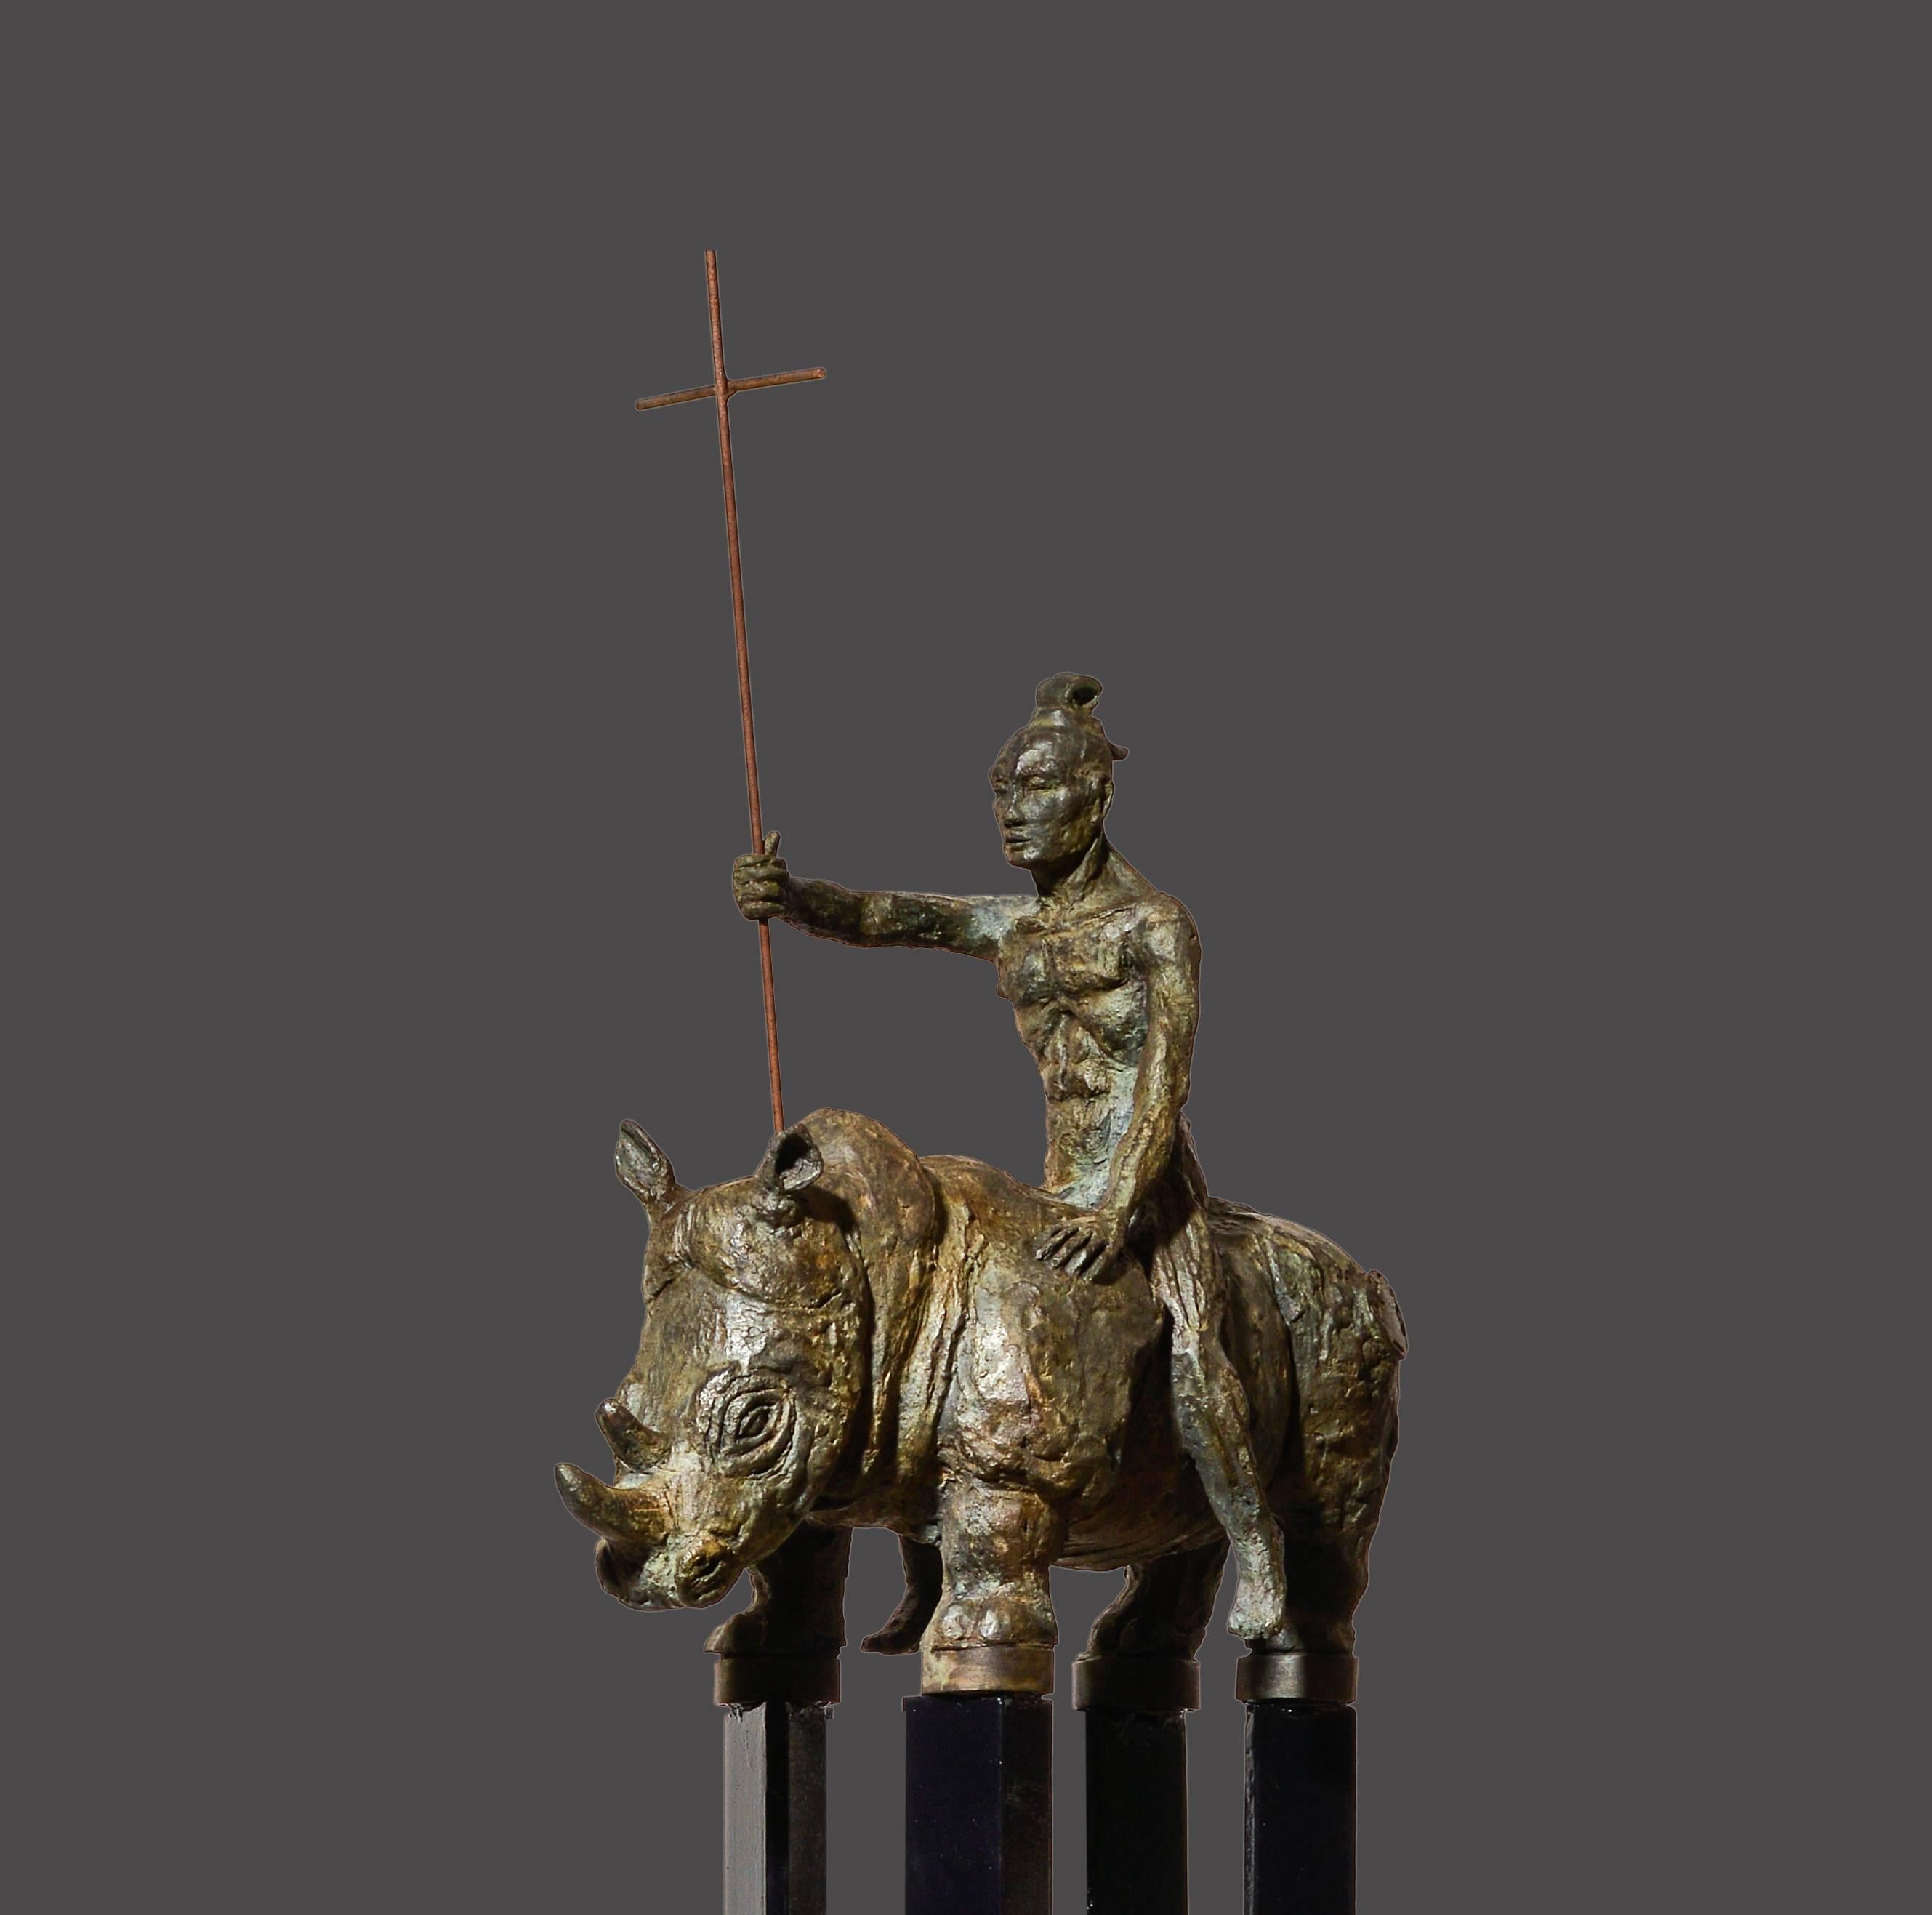 Samurai IV. – Sculpture von Mariko